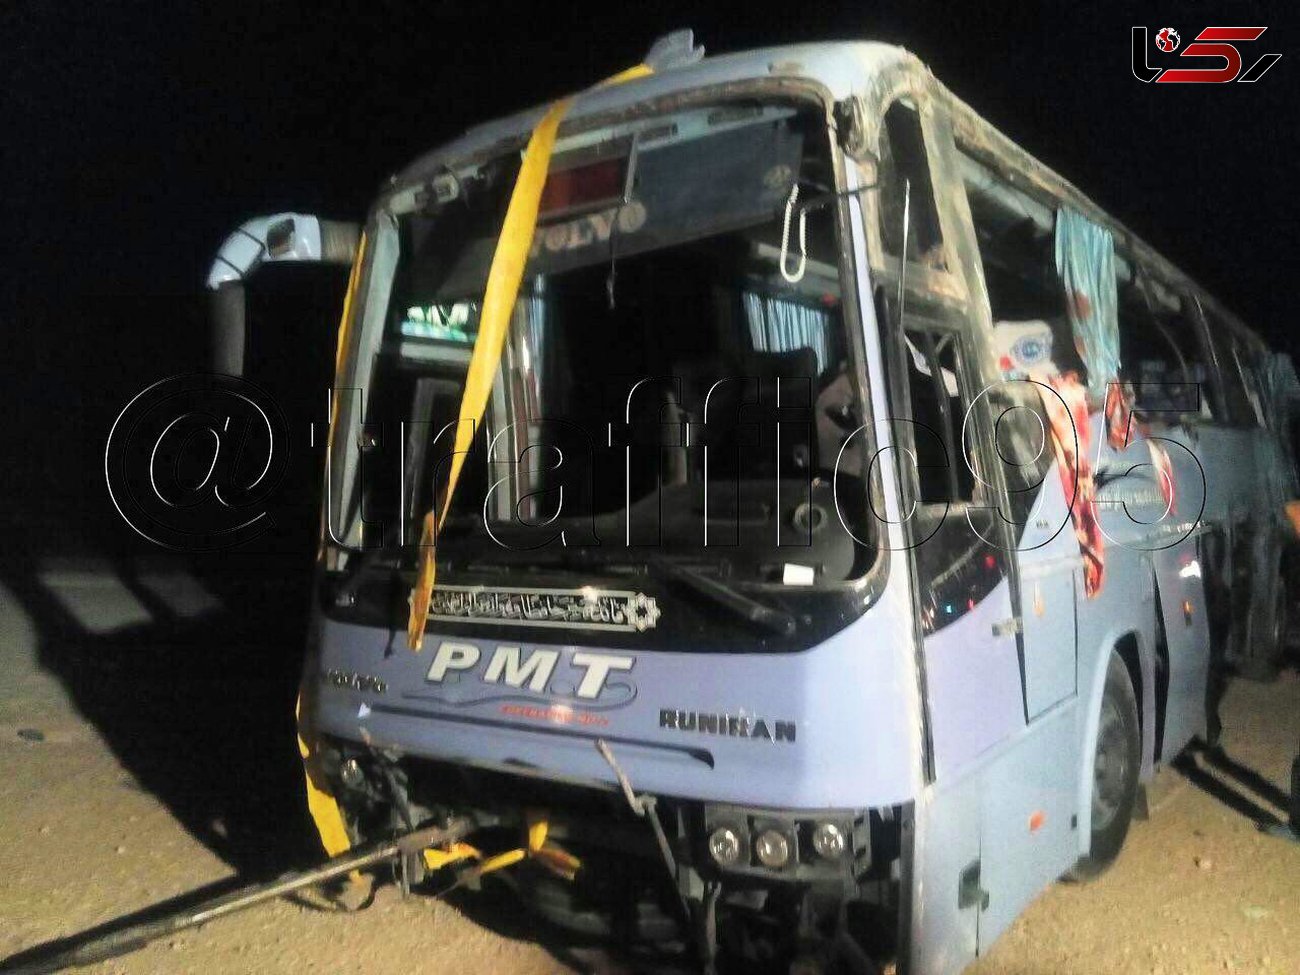 واژگونی اتوبوس اینبار در اصفهان / 3 کشته و 9 تن به شدت مجروح شدند + عکس 